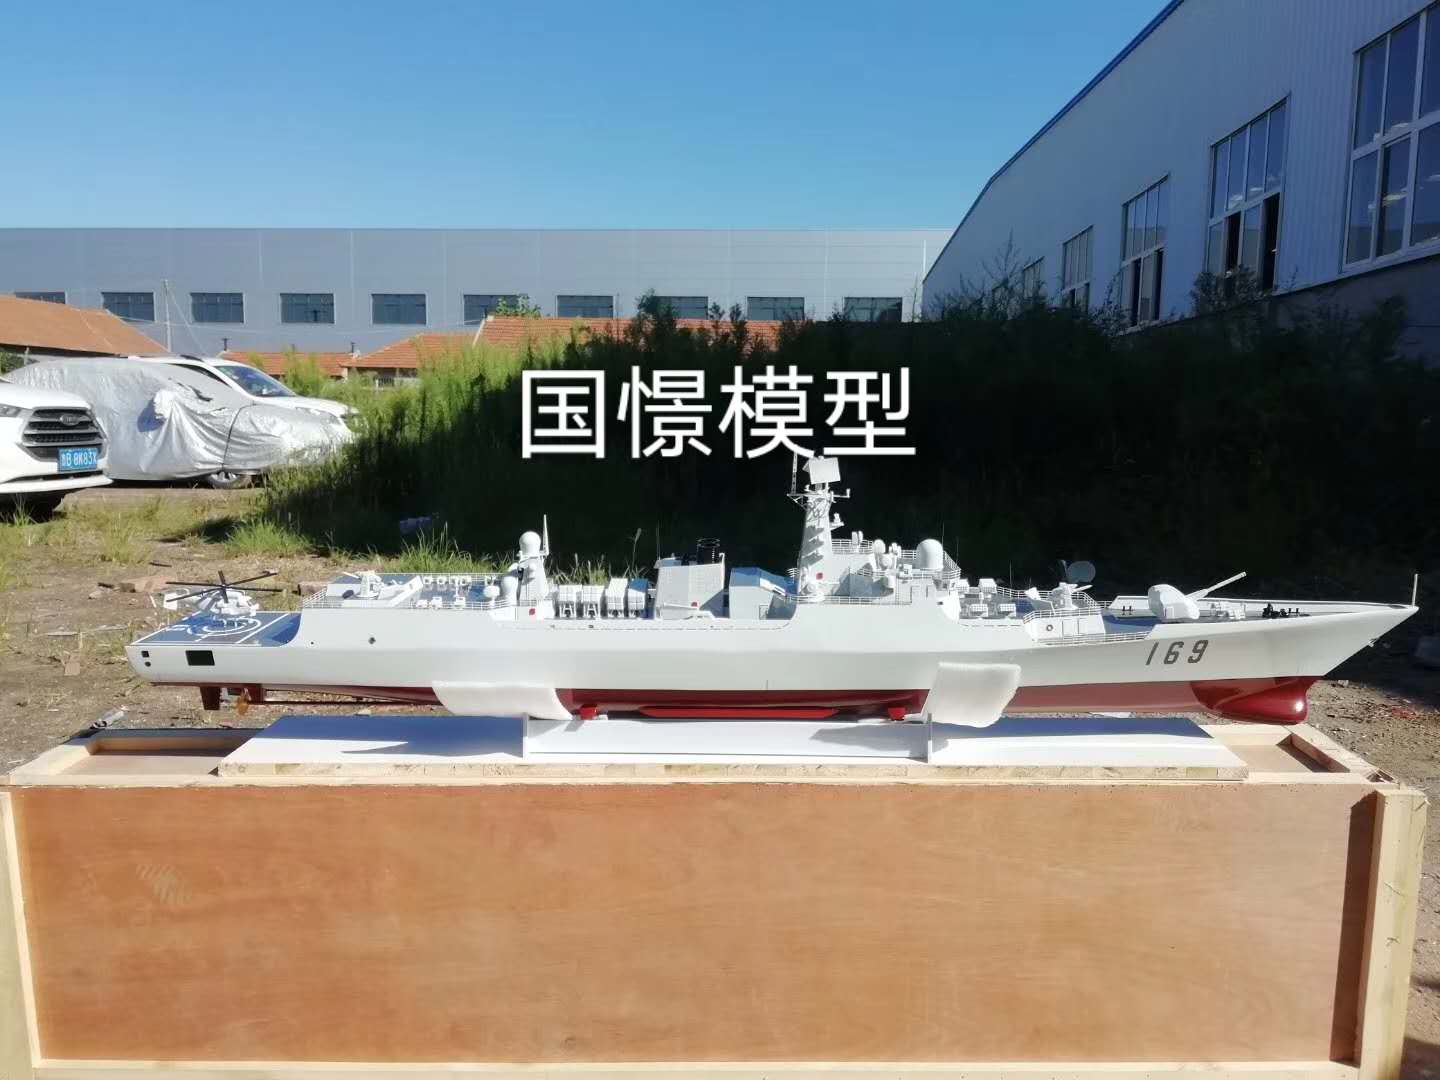 船舶模型